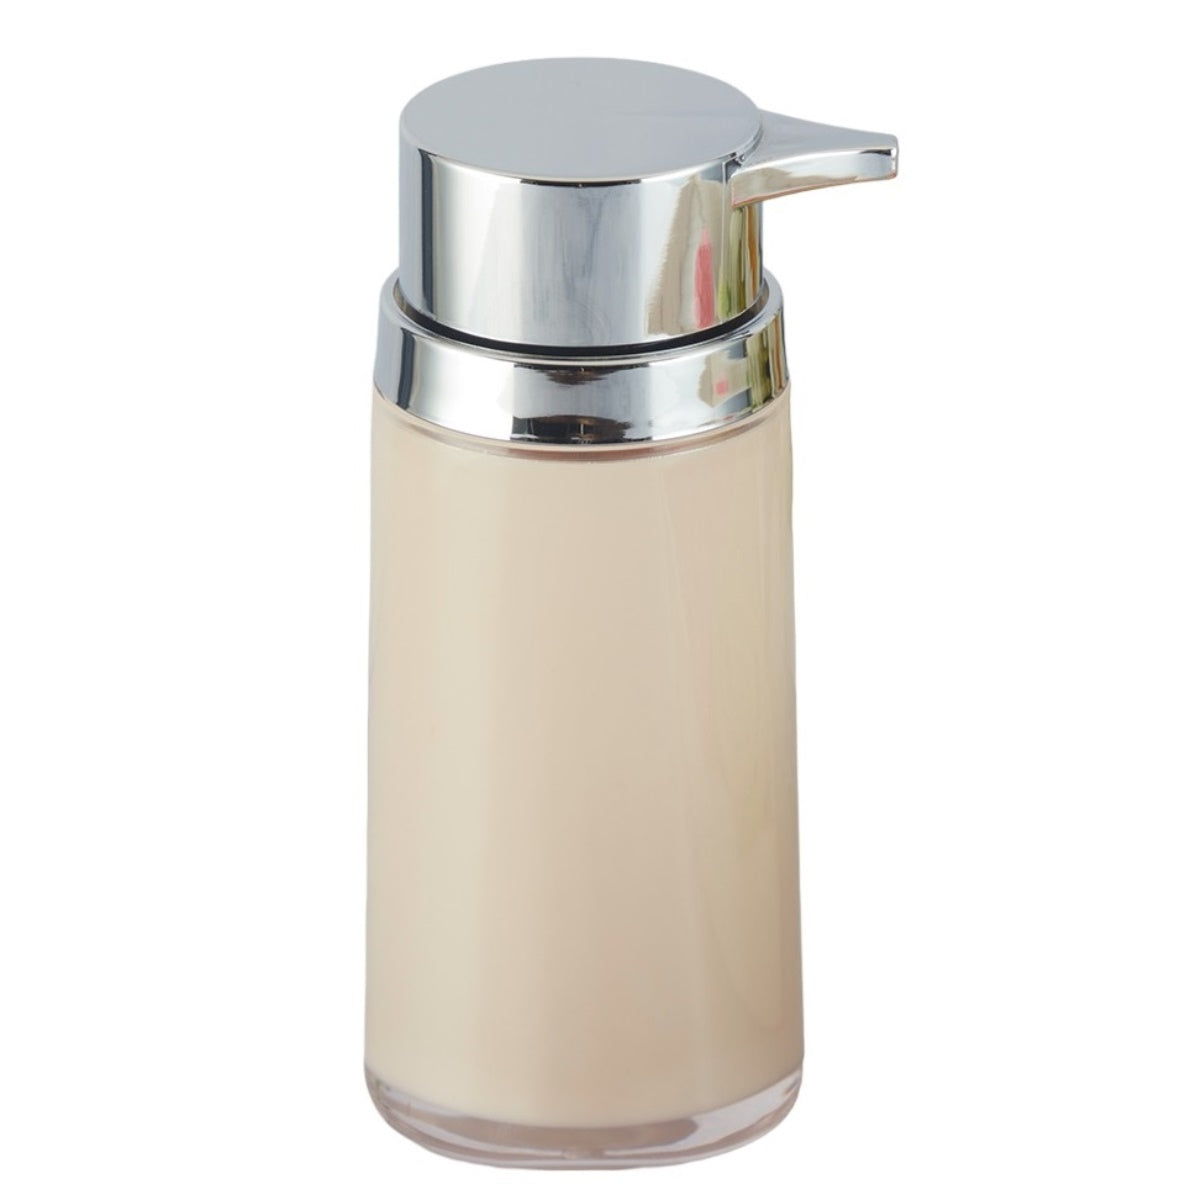 Acrylic Soap Dispenser Pump for Bathroom for Bath Gel, Lotion, Shampoo (9928)